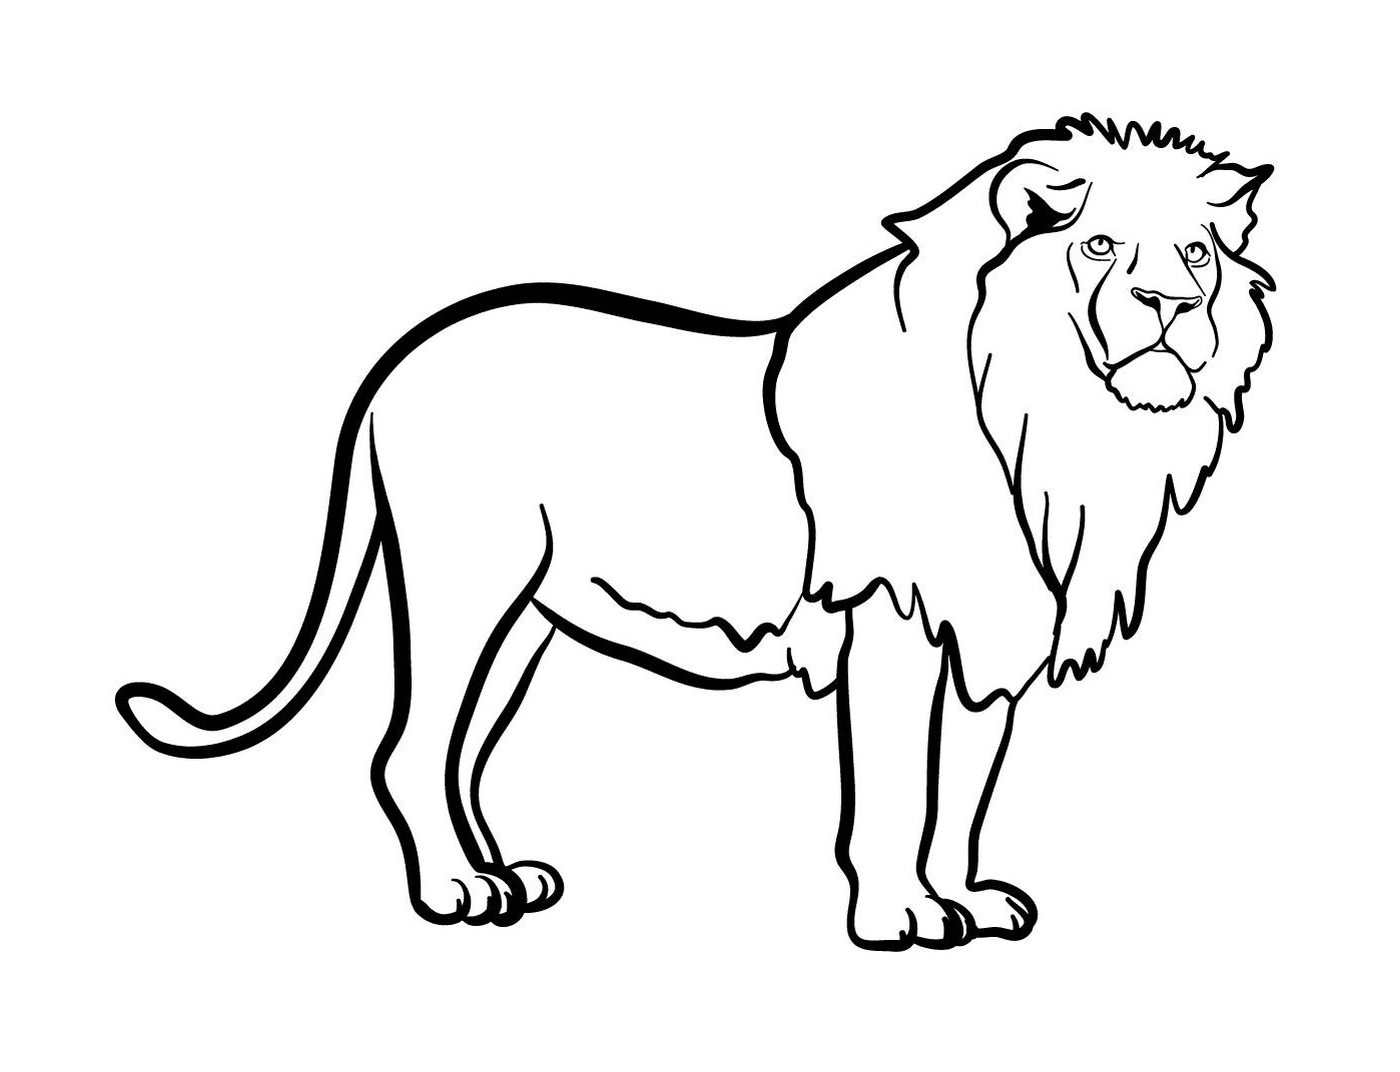  A lion 